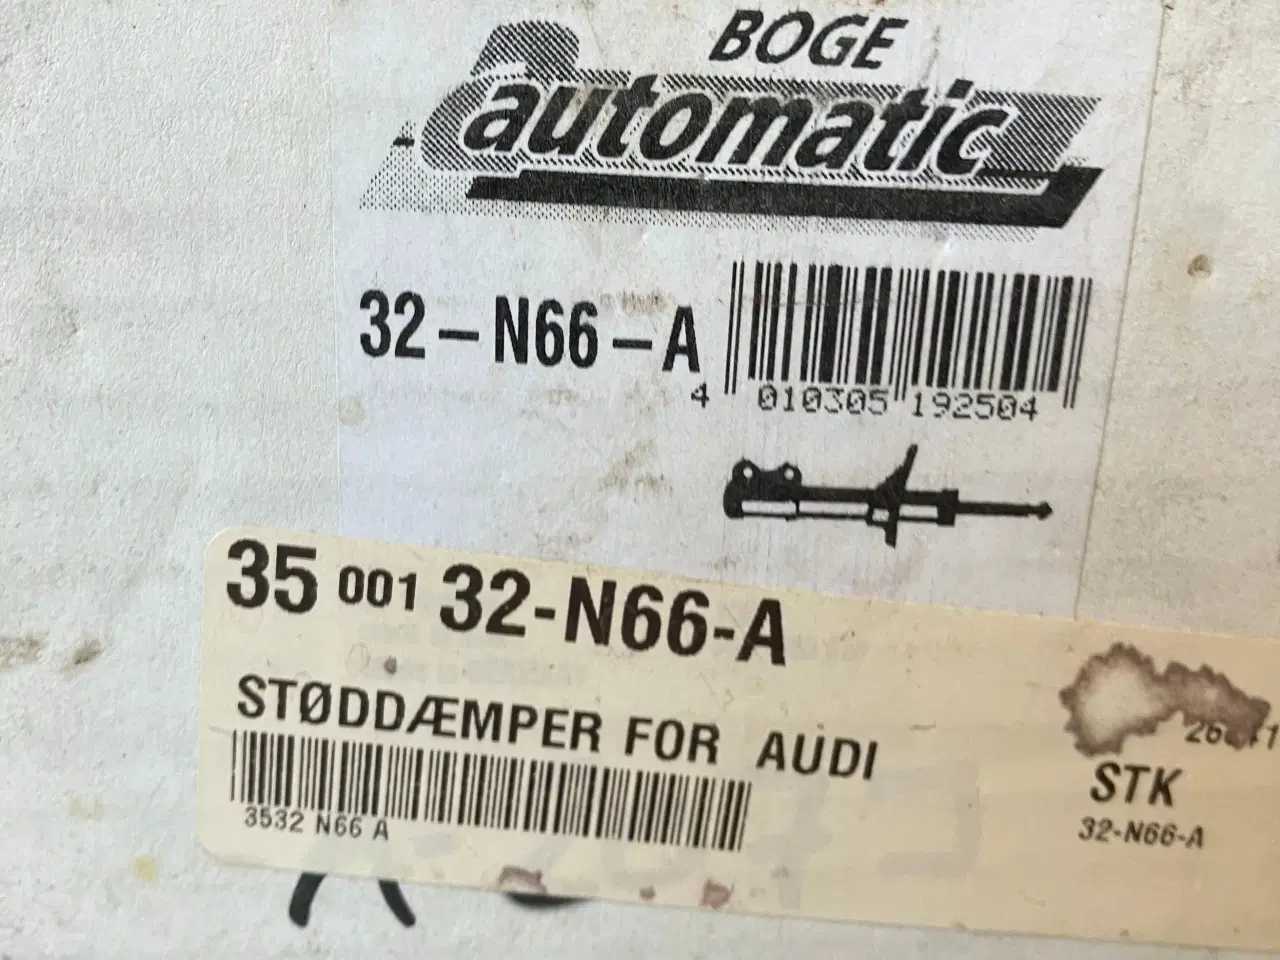 Billede 2 - 2  stk forrest støddæmpere til Audi A6 4B år  2005